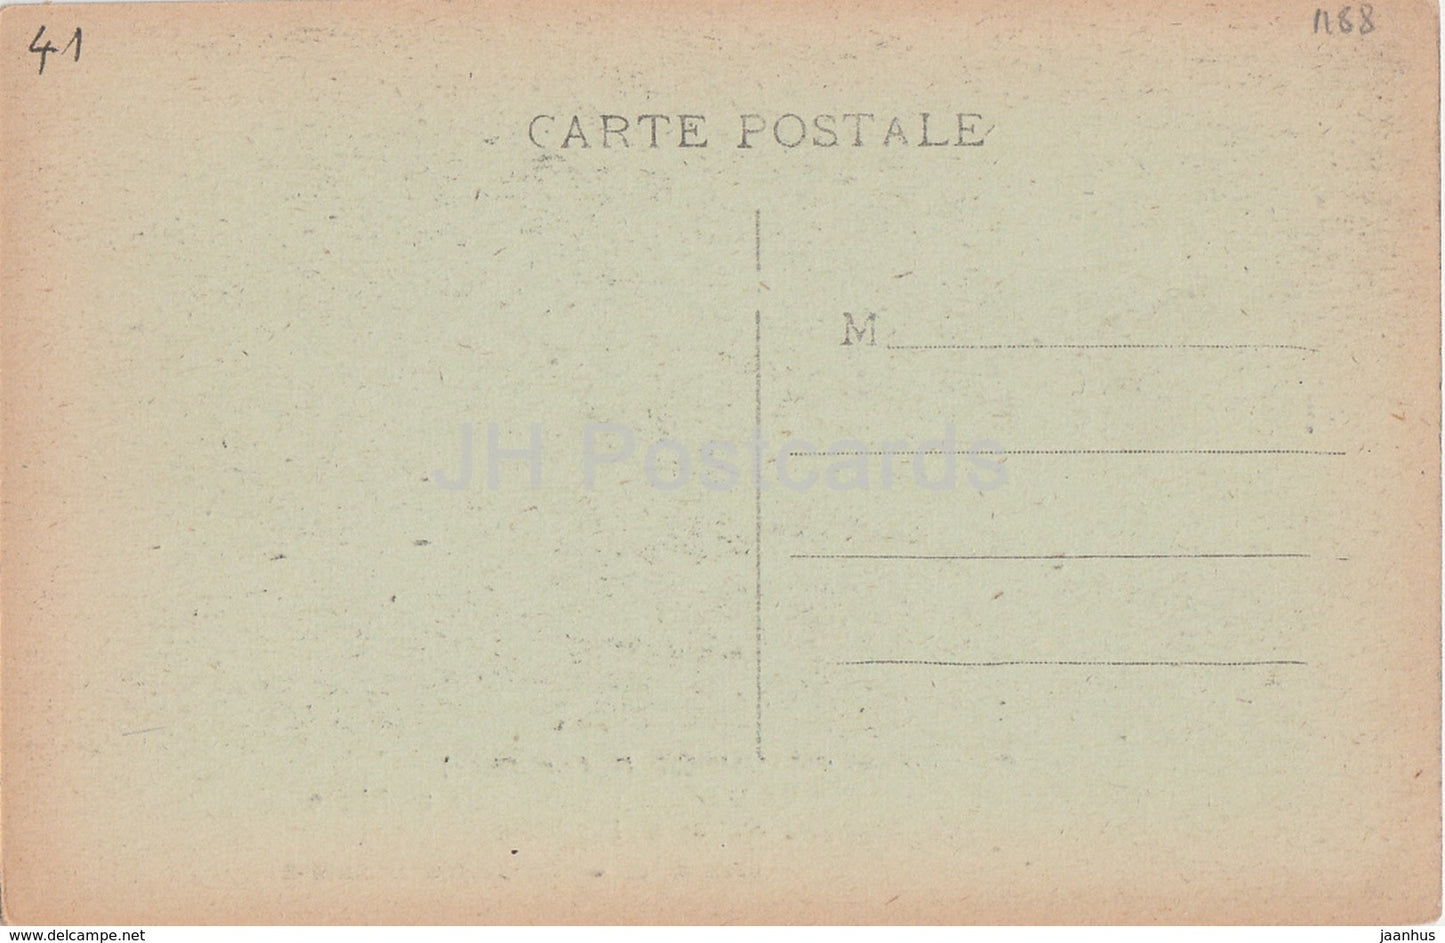 Chateau de Chaumont - Chambre de Catherine de Medicis - Tapisserie gothique - castle - old postcard - France - unused